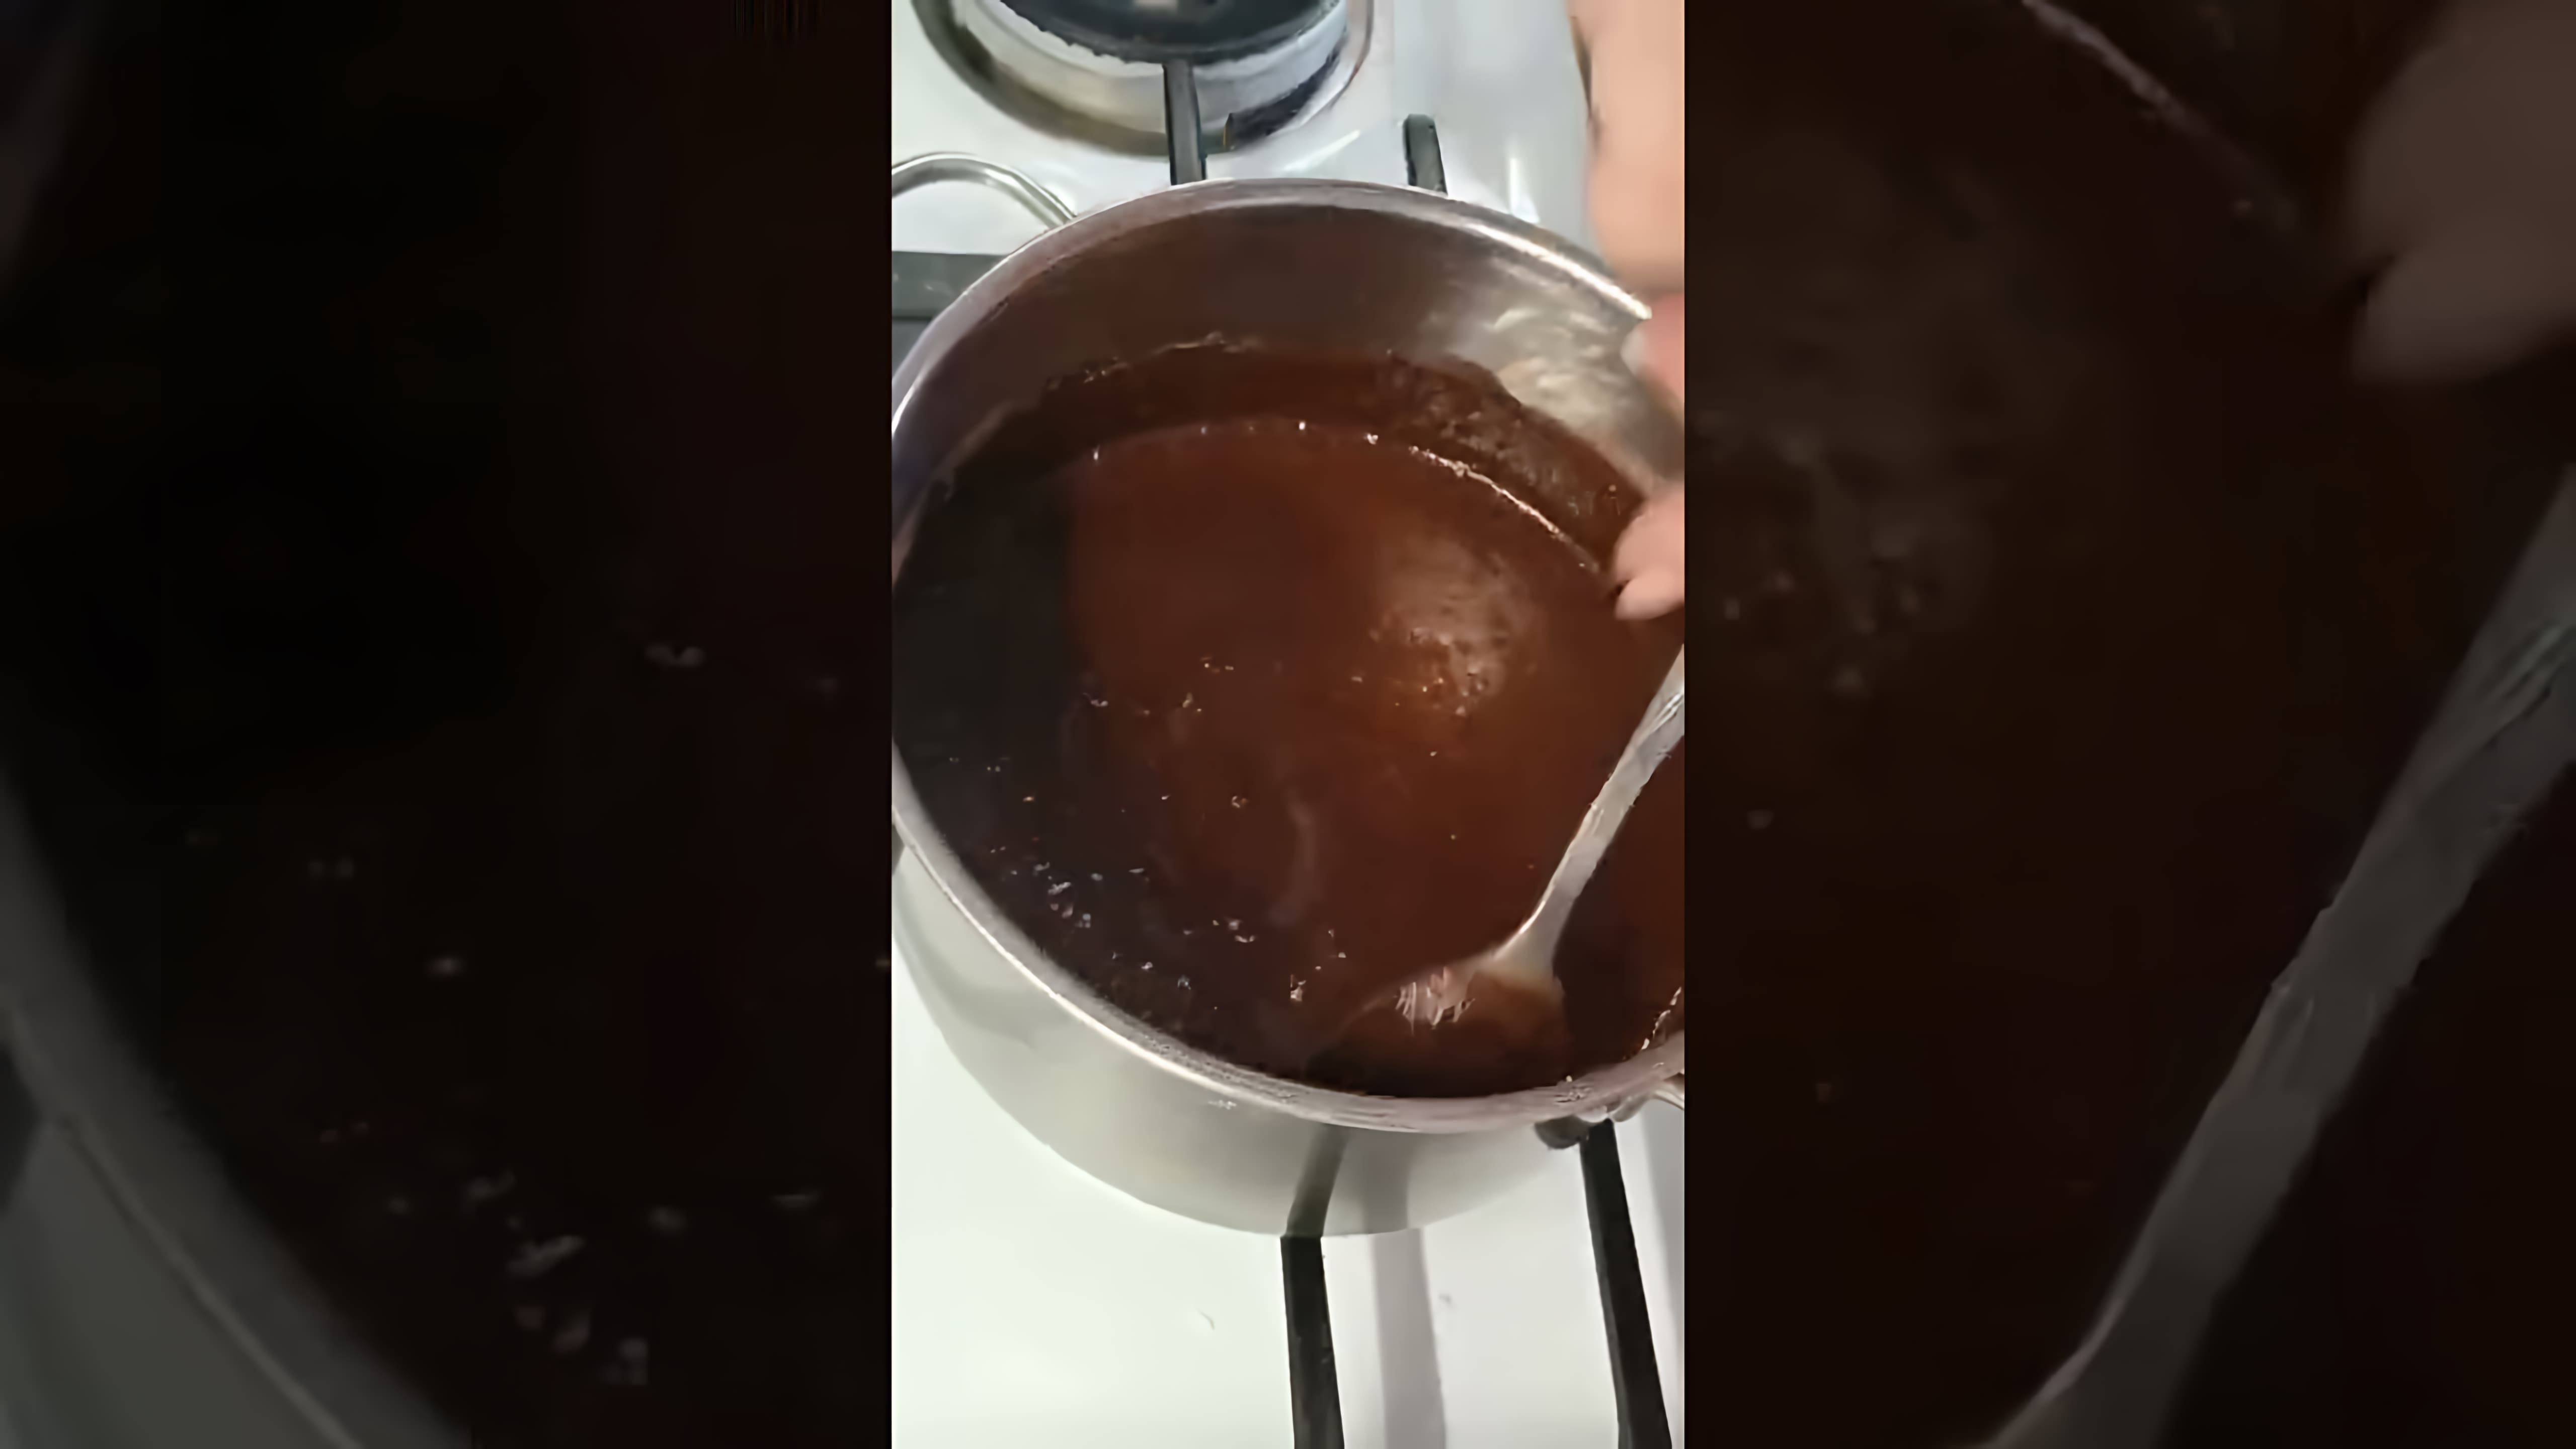 Видео рецепт приготовления шоколадной глазури для покрытия выпечки, такой как торты, пончики и другие сладости